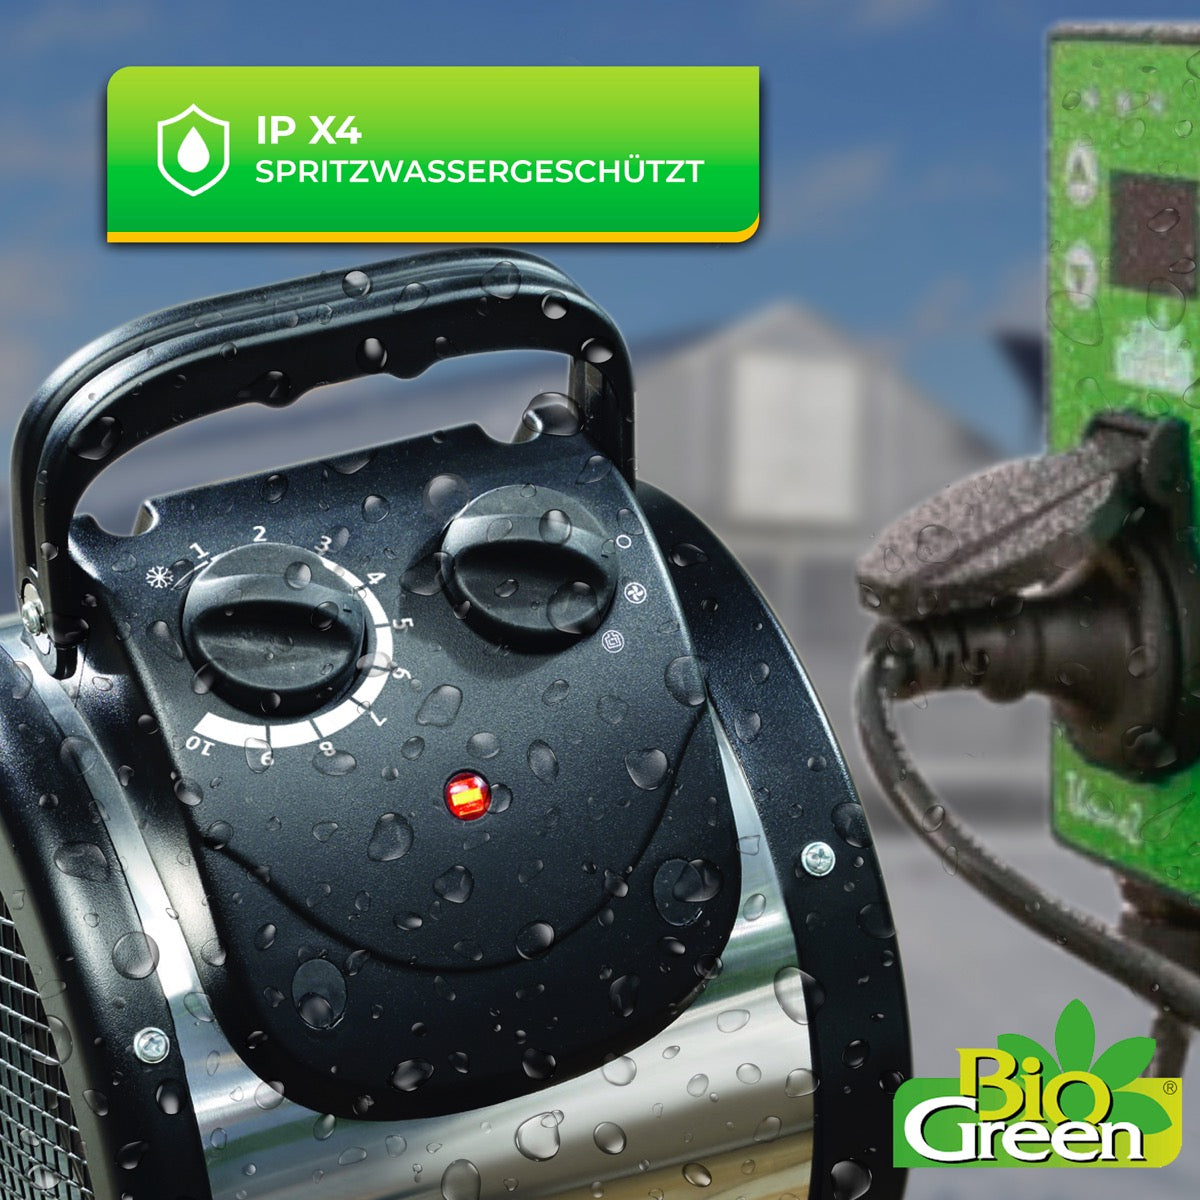 Bio Green Heizlüfter Palma mit manuellem Thermostat - spritzwassergeschützt IPX4